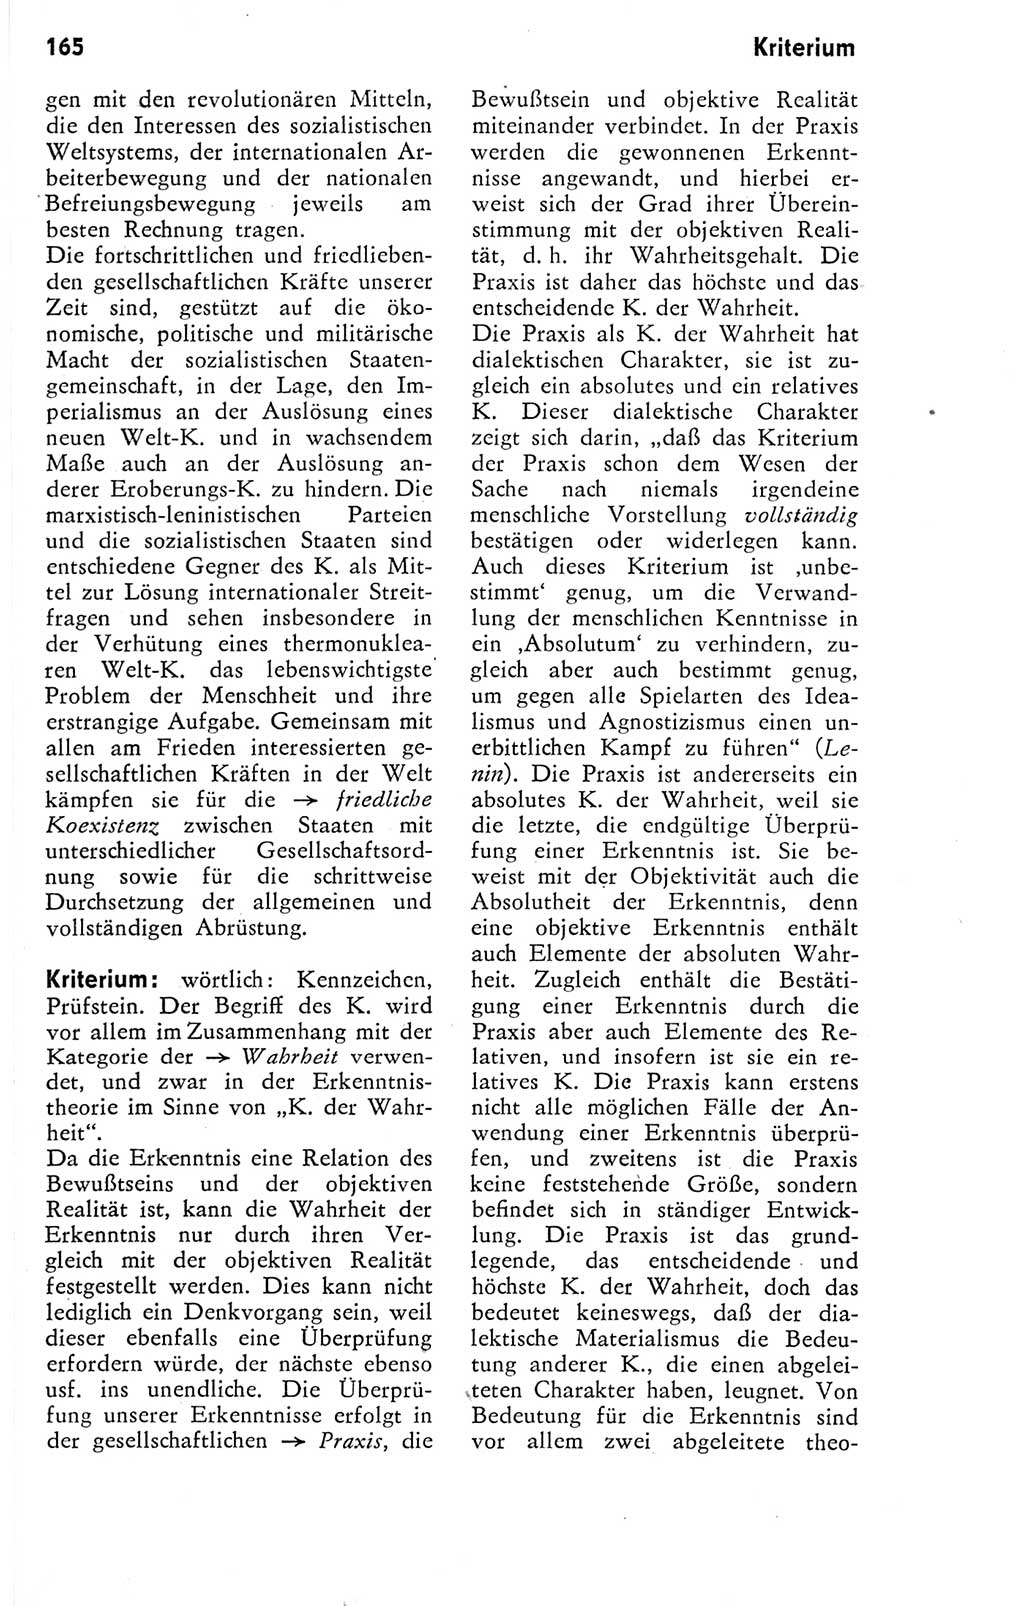 Kleines Wörterbuch der marxistisch-leninistischen Philosophie [Deutsche Demokratische Republik (DDR)] 1974, Seite 165 (Kl. Wb. ML Phil. DDR 1974, S. 165)